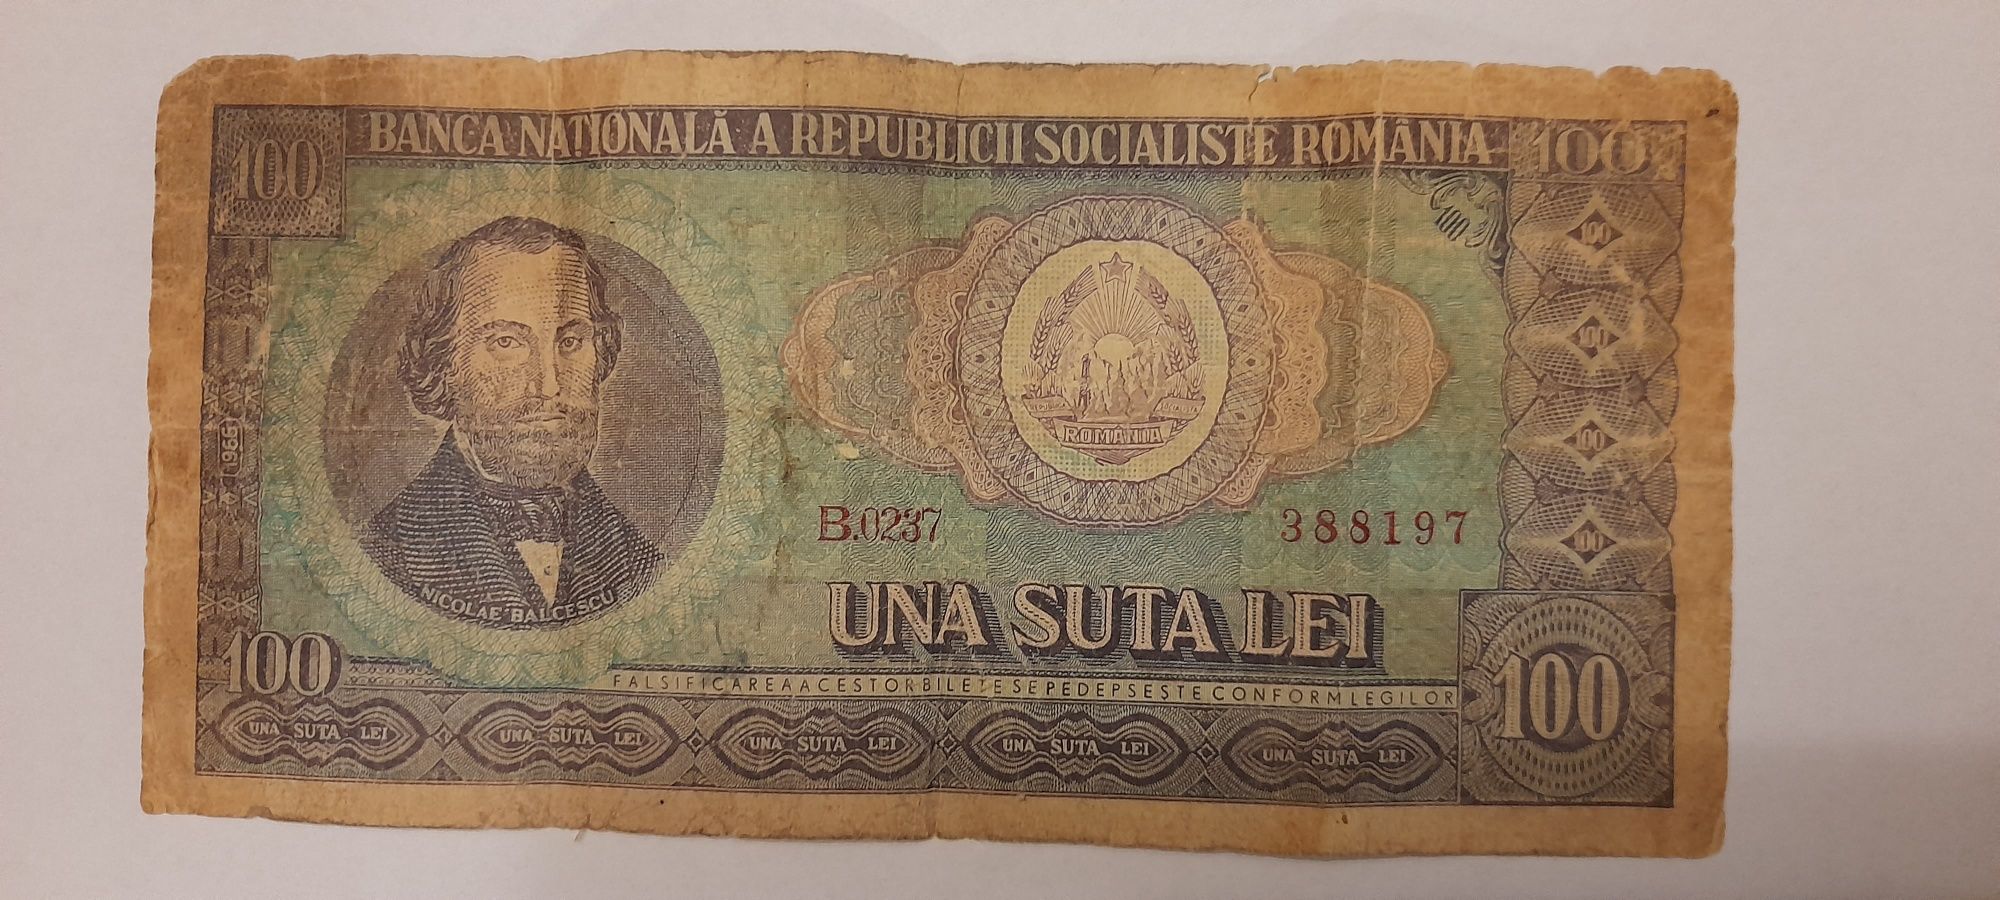 Bacnota 100 lei 1966